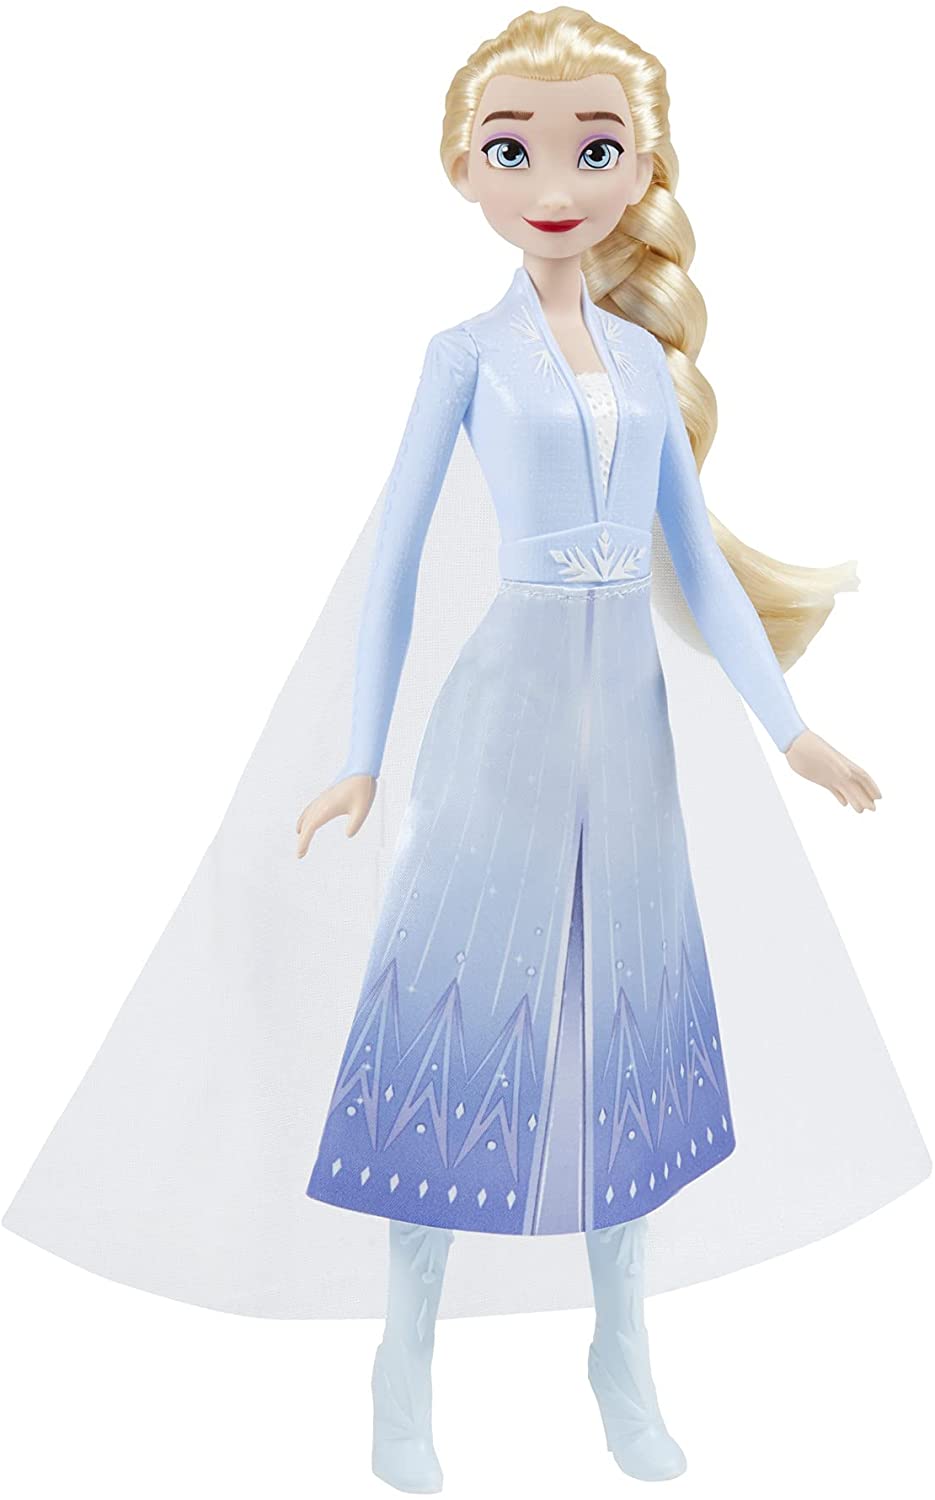 Disney F0796 2 Elsa Frozen Shimmer Fashion Puppe, Rock, Schuhe und langes blondes Haar, Spielzeug für Kinder ab 3 Jahren